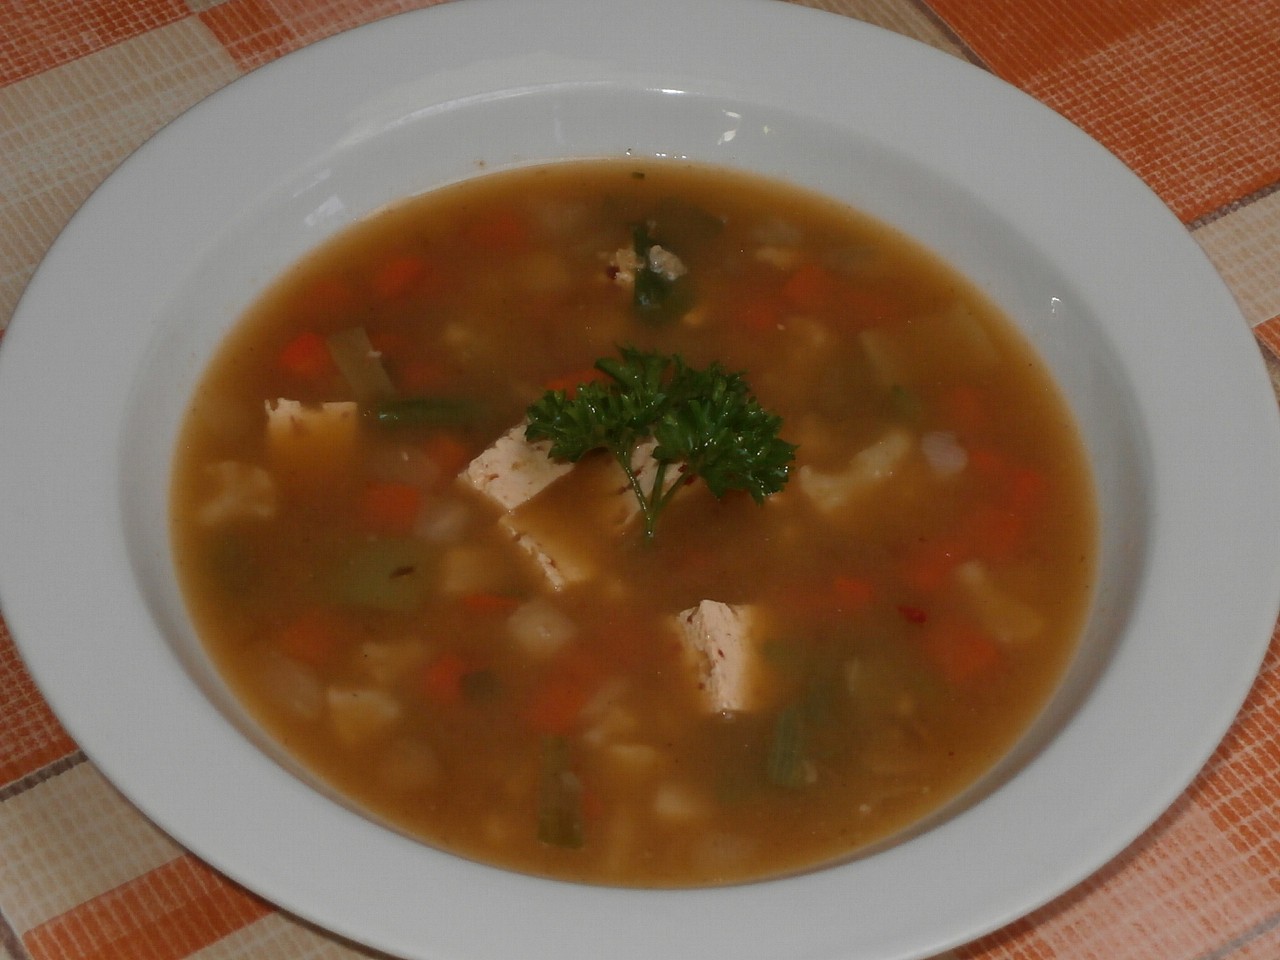 Česká variace na miso polévku